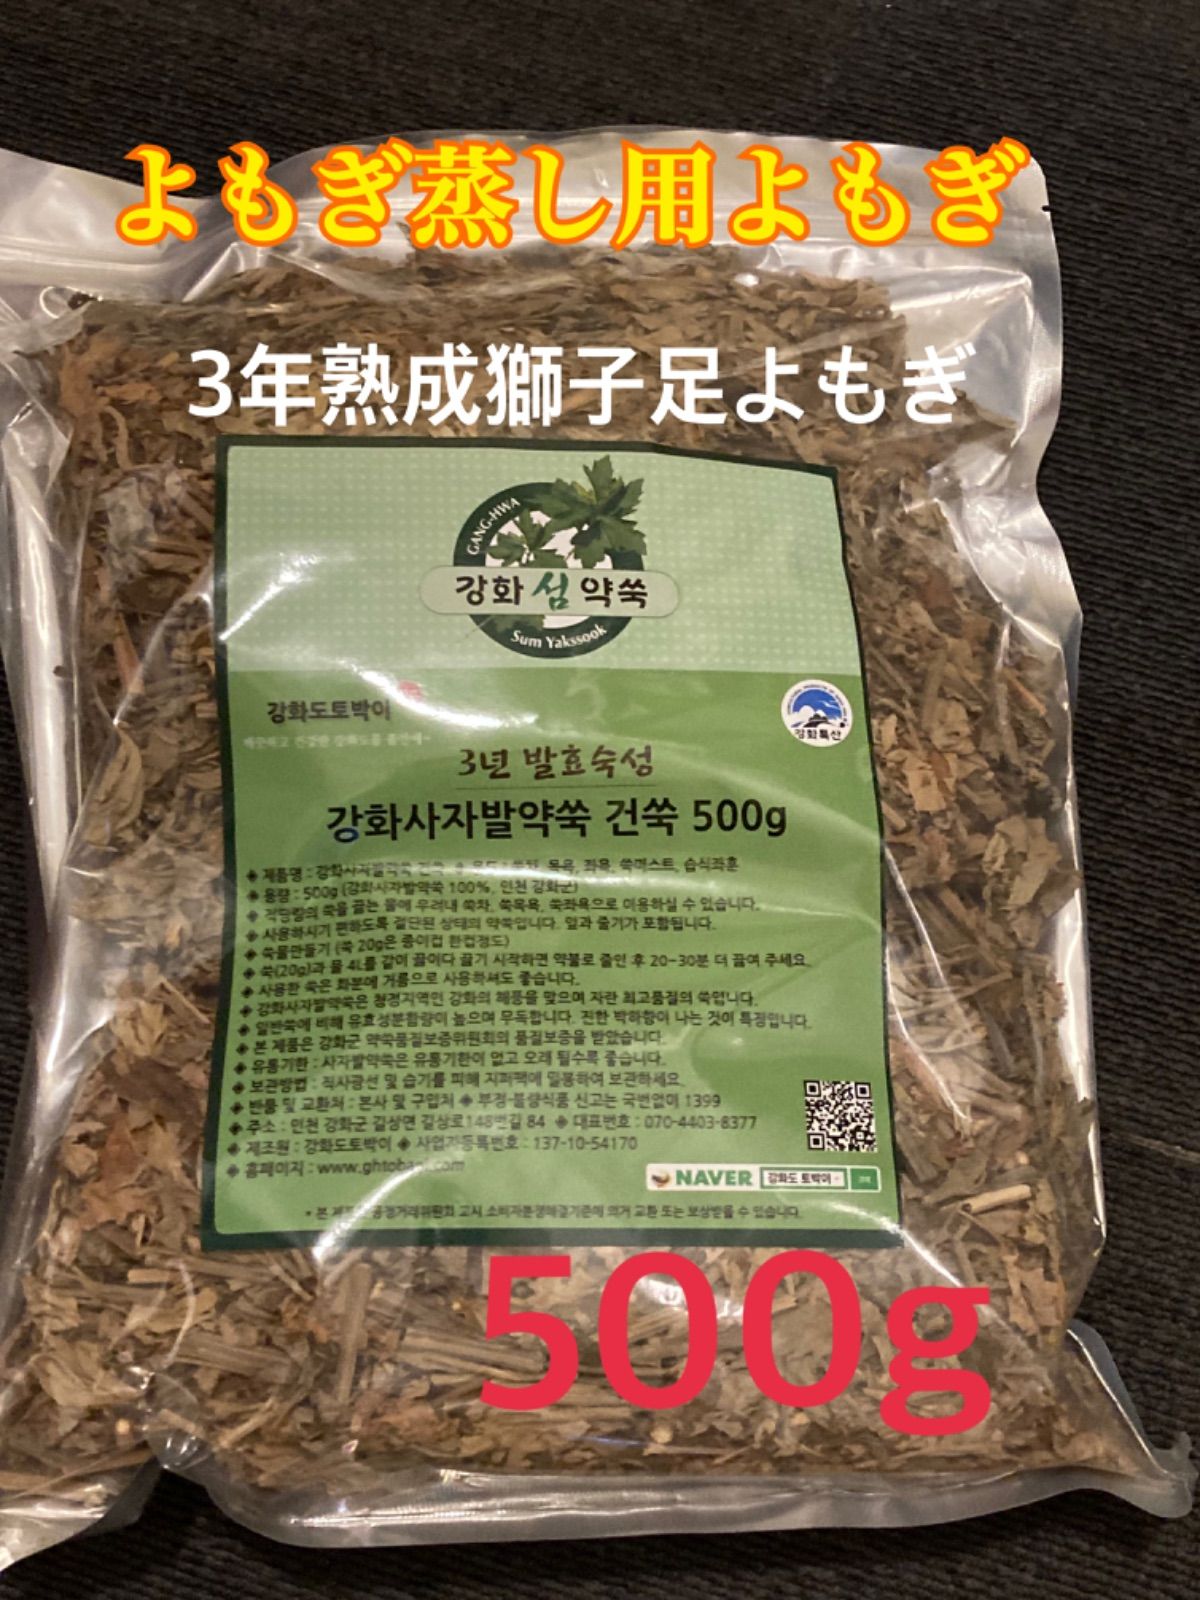 よもぎ蒸し、よもぎ風呂に✨韓国江華島産 3年熟成獅子足よもぎ 1kg 